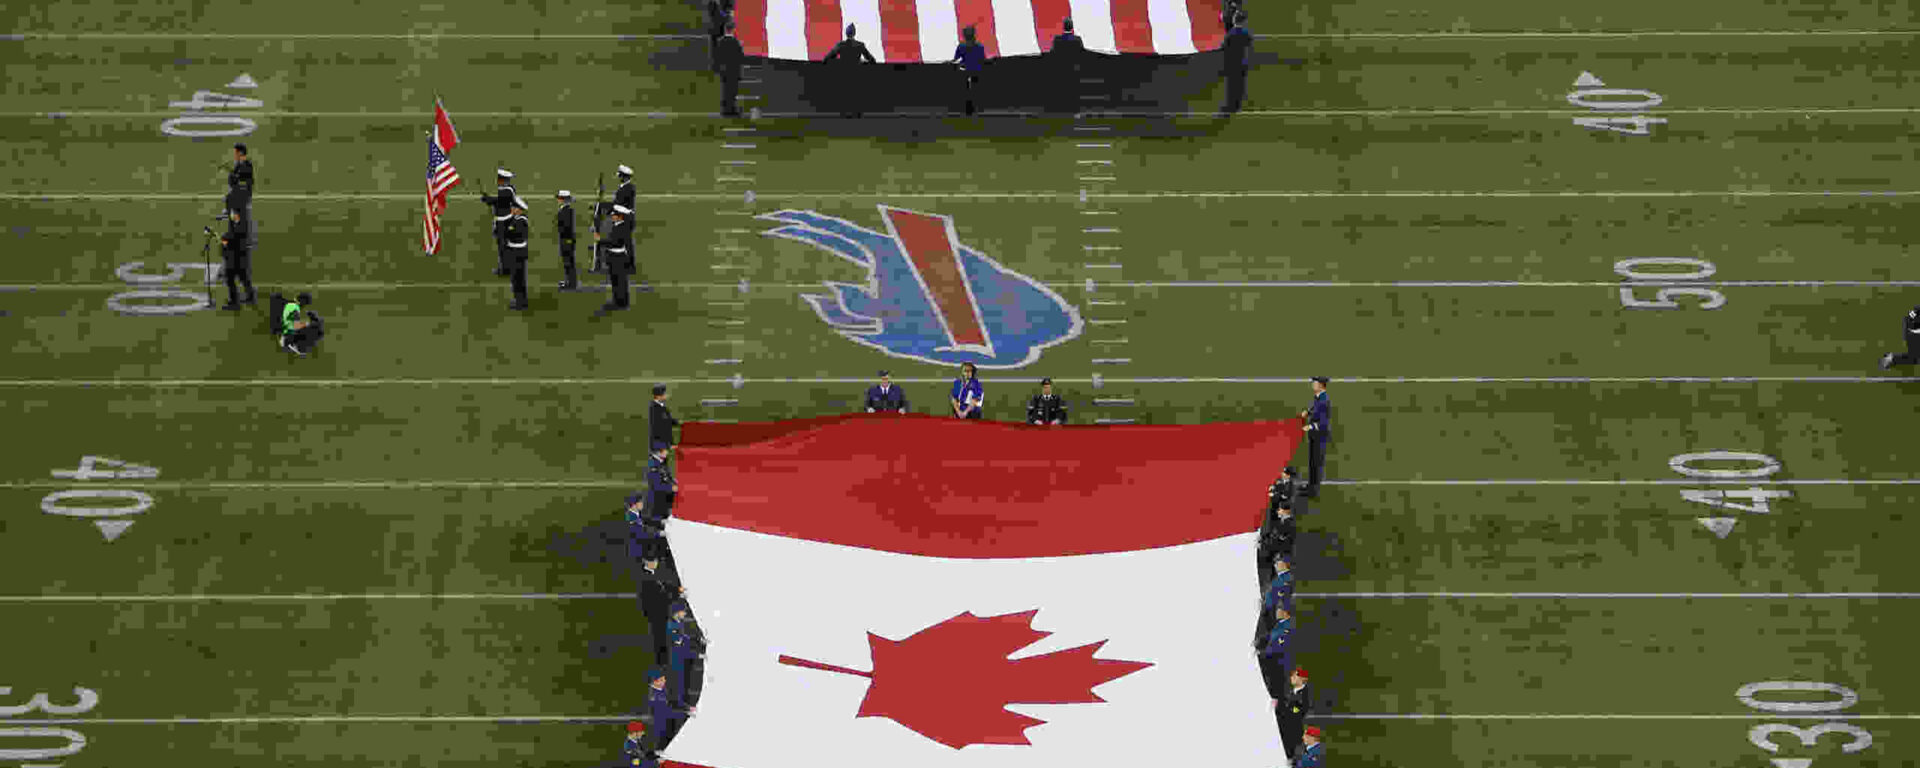 Steagurile americane și canadiene s-au desfășurat în timpul unui joc NFL